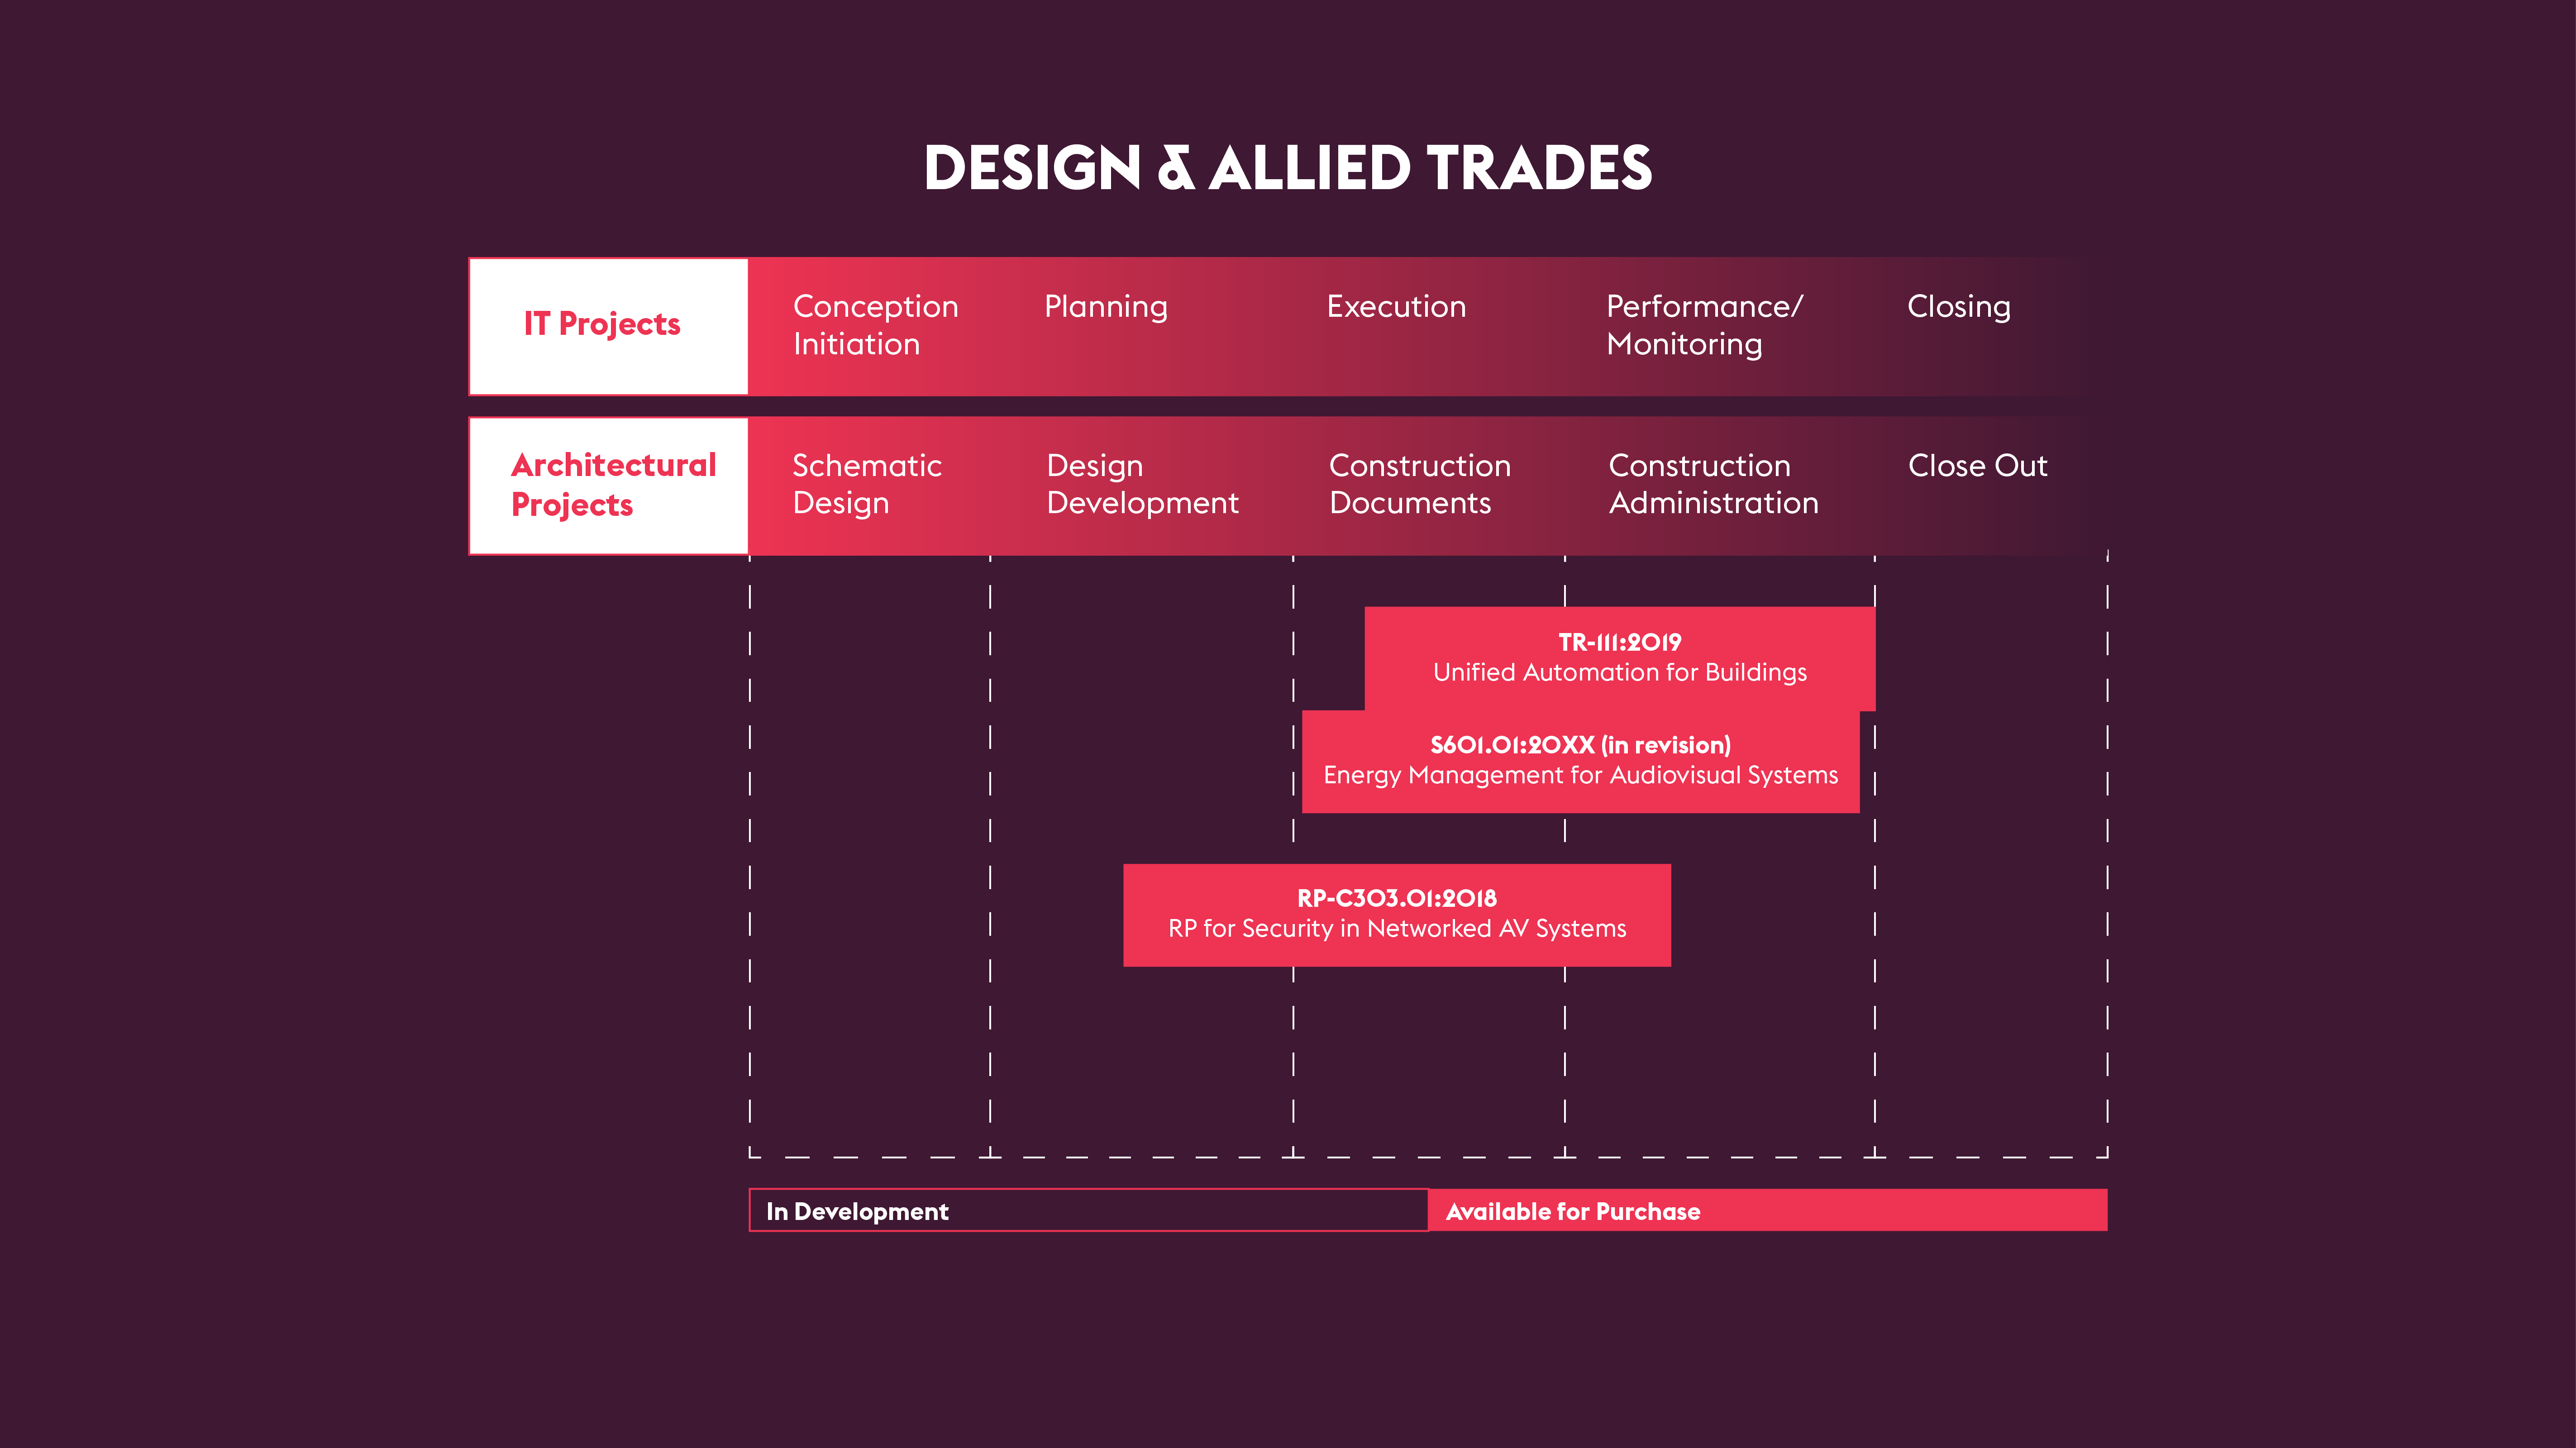 Design & Allied Trades